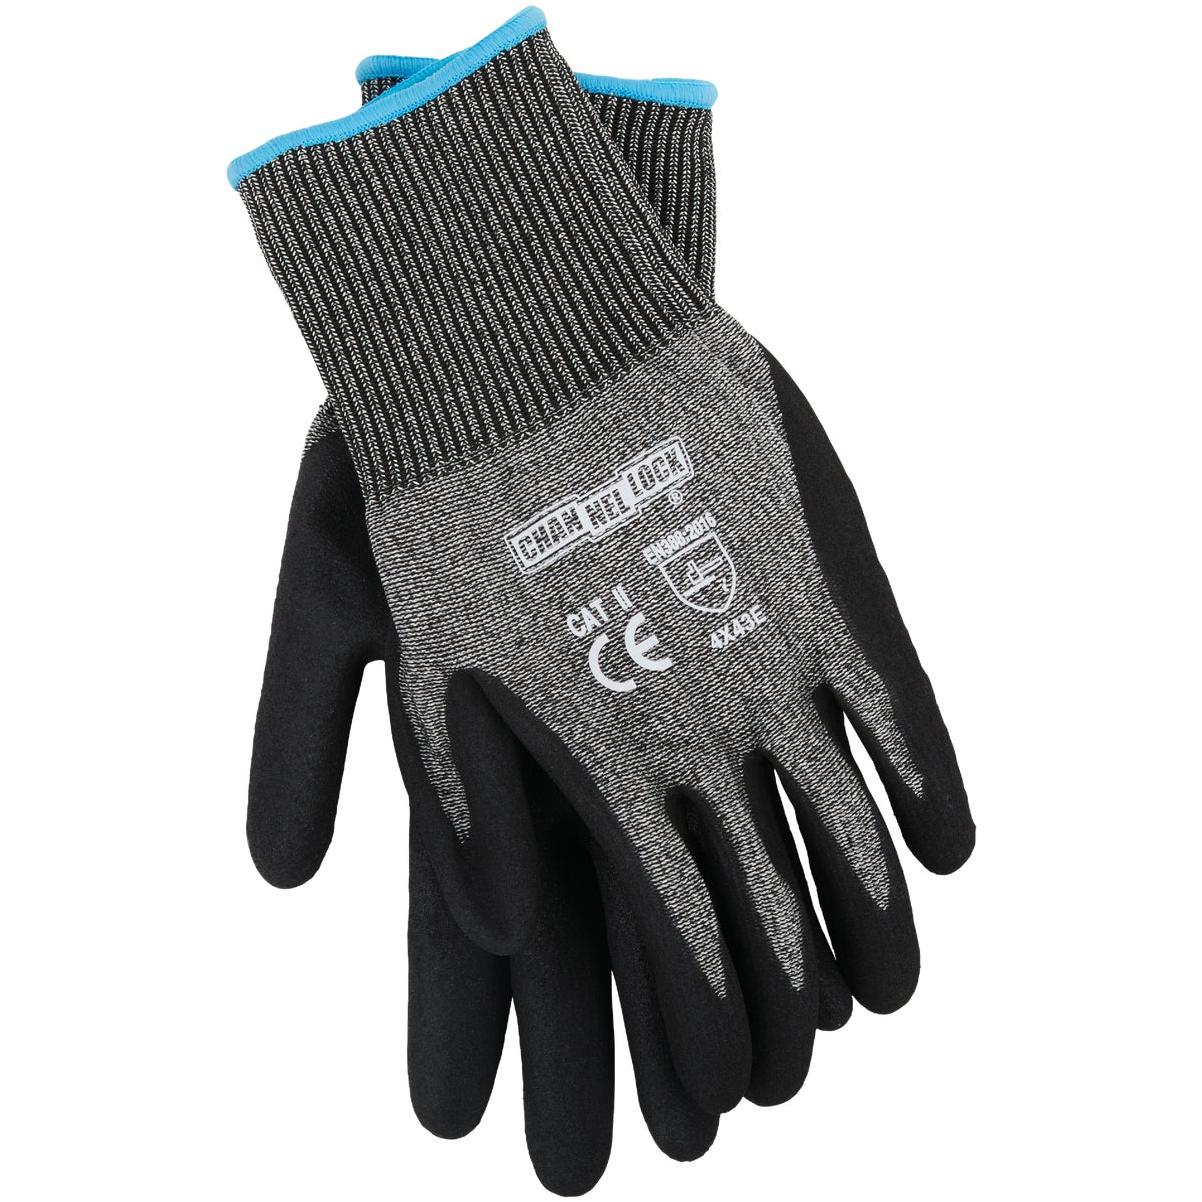 Magid D-ROC Level Cut Resistance Gloves, 50% OFF